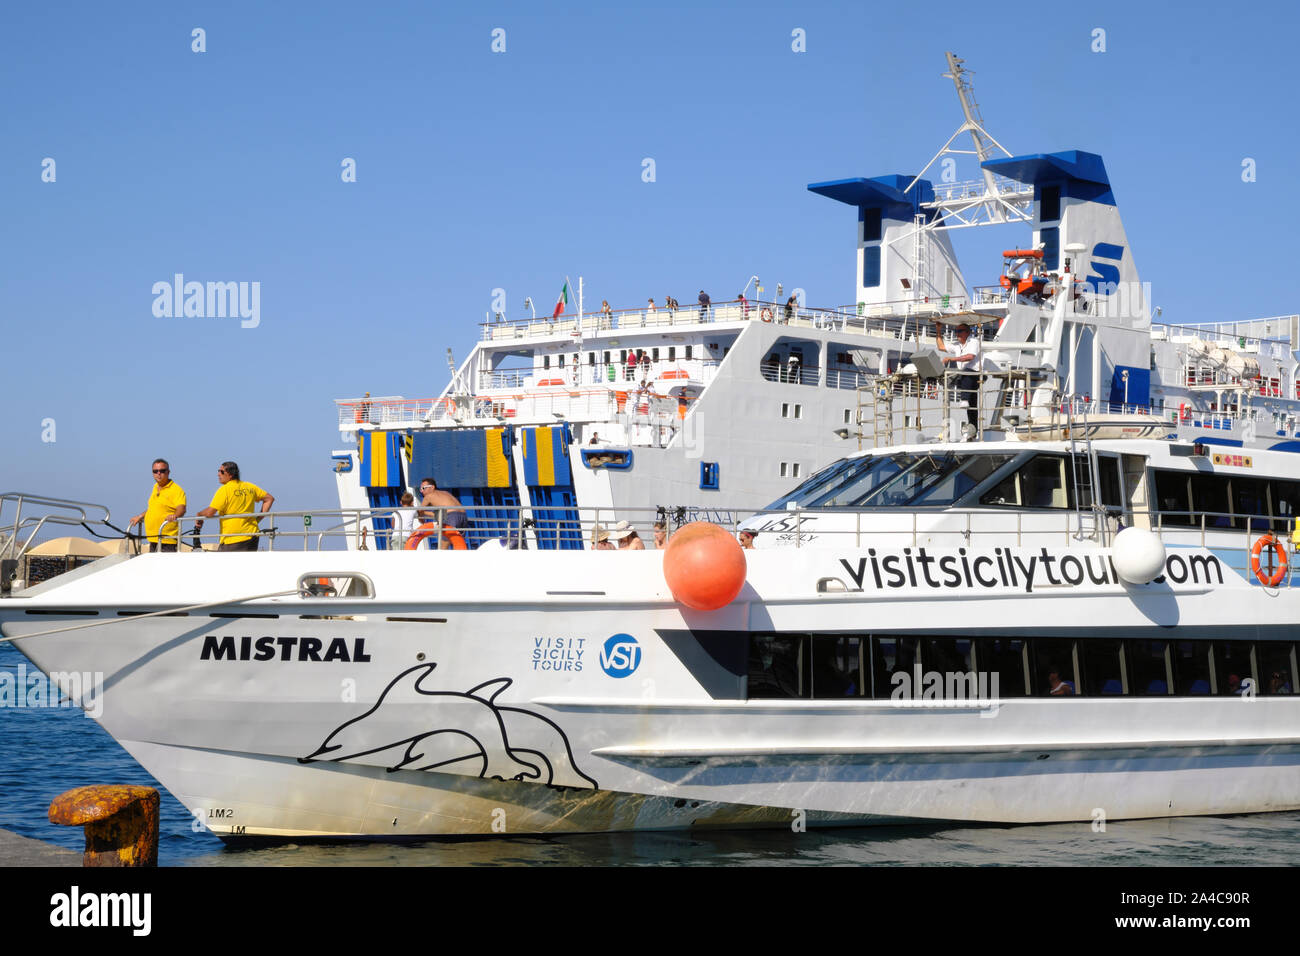 Touristische Motorboot in Porto di Levante, die kommerziellen Hafen, von wo aus Fähren und Motorboote angedockt sind. Vulcano, Liparische Inseln, Sizilien, Italien. Stockfoto